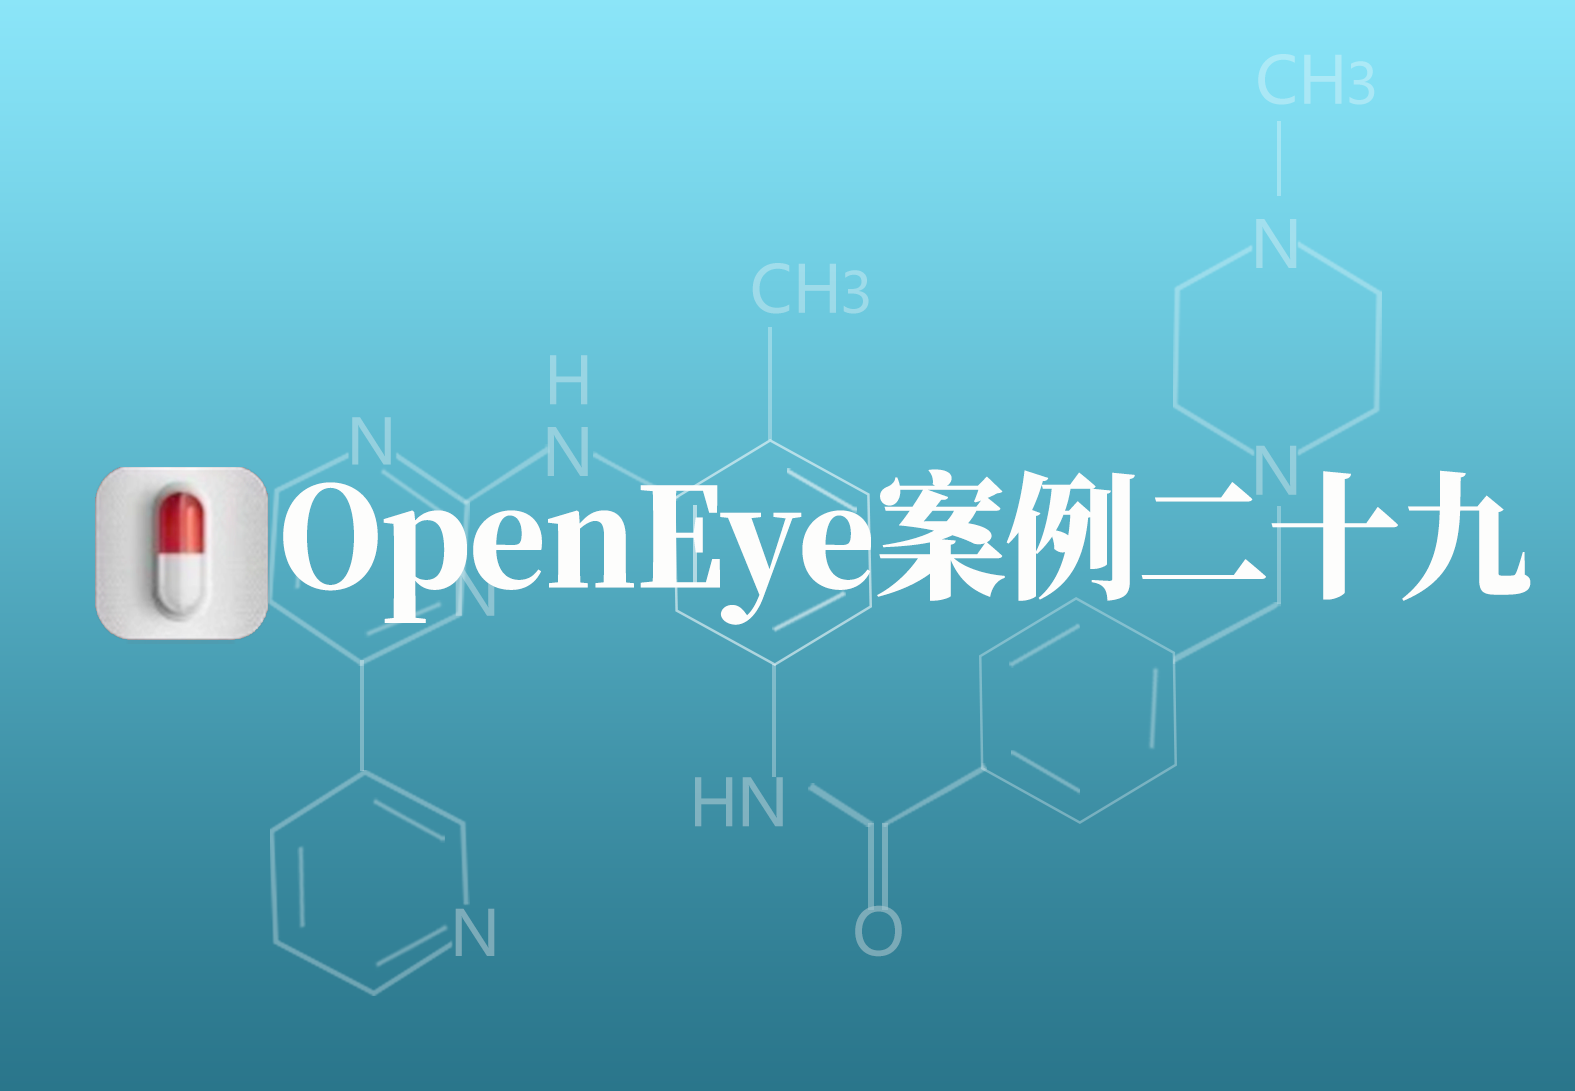 OpenEye应用案例二十九：计算机辅助药物设计方法优化维生素K还原酶抑制剂